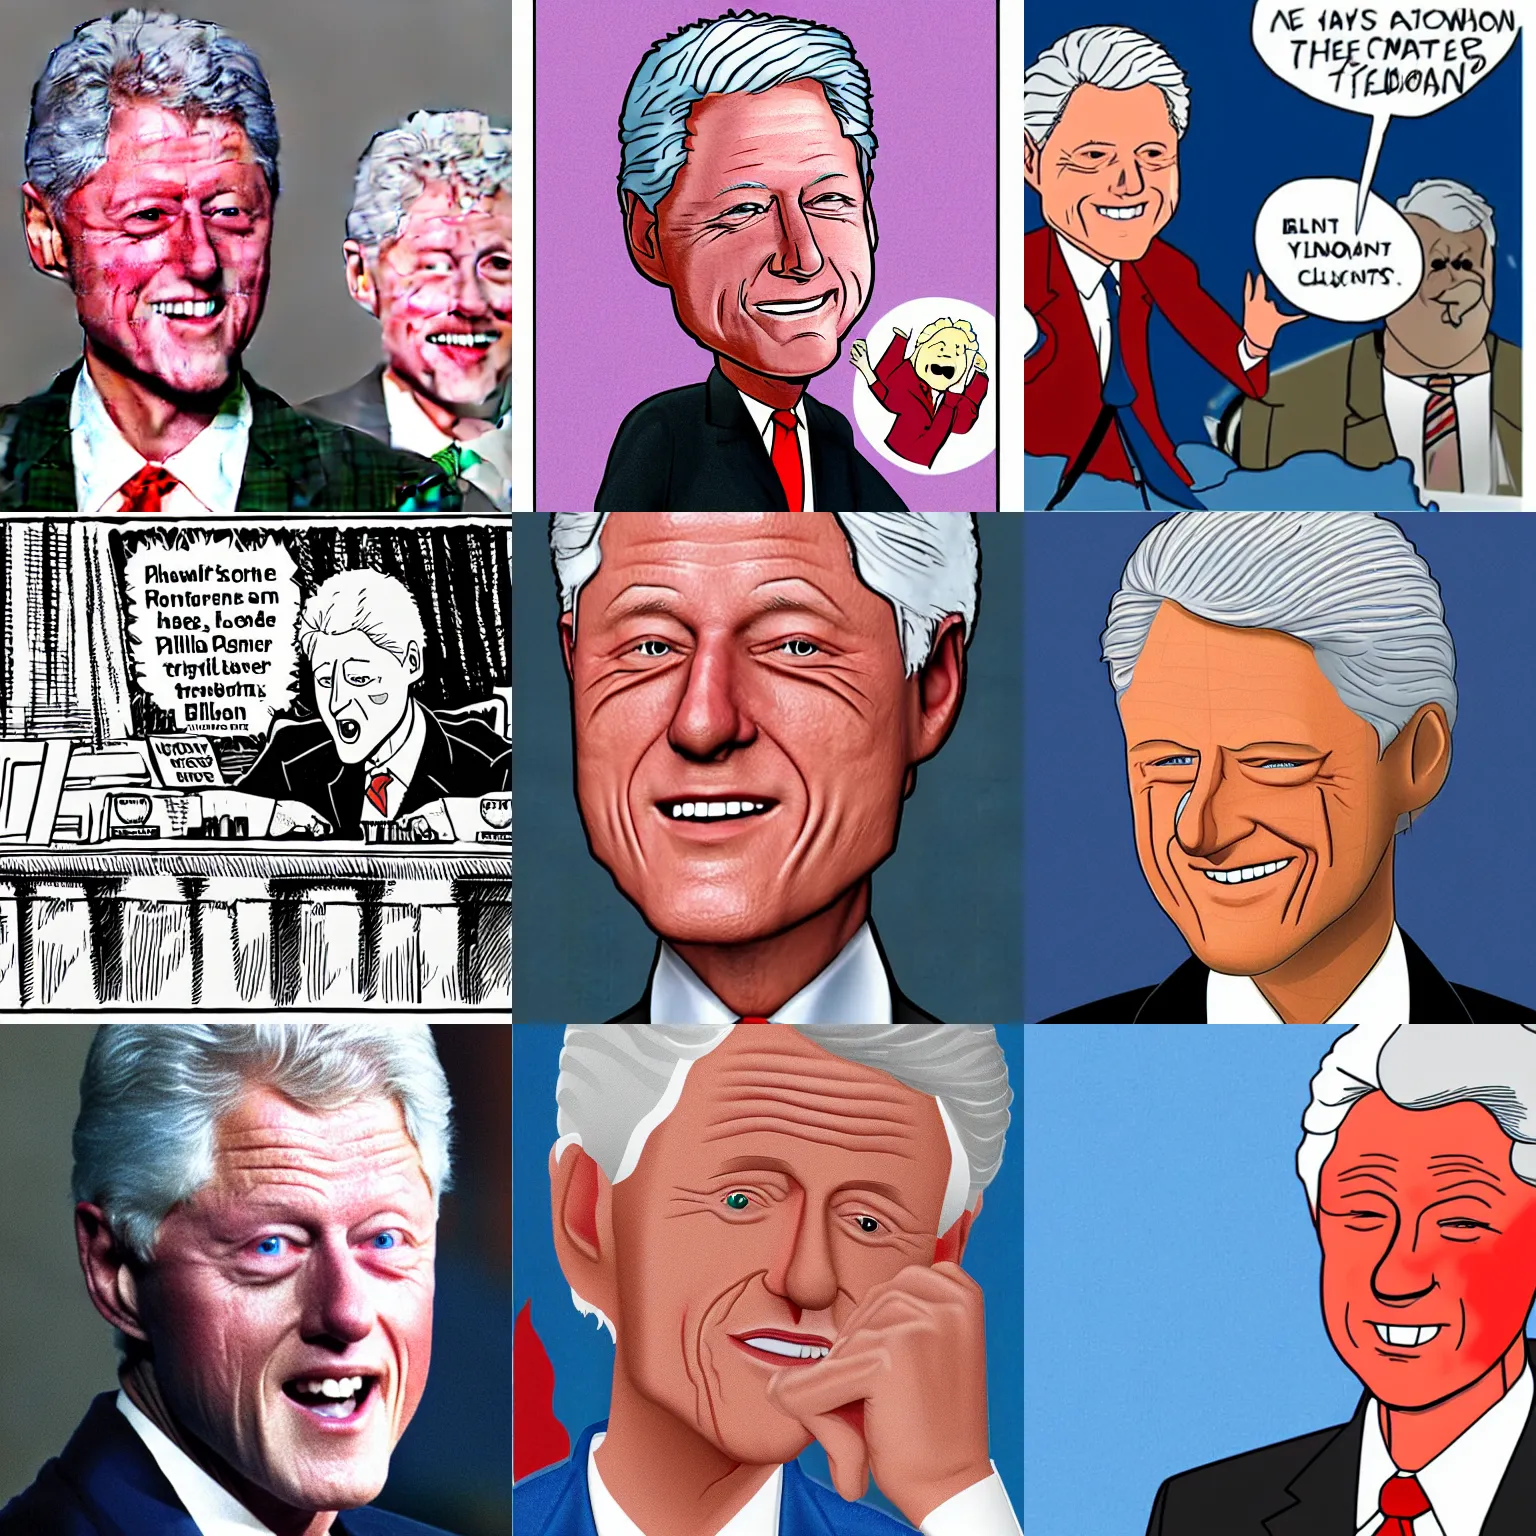 Prompt: a cartoon of Bill Clinton